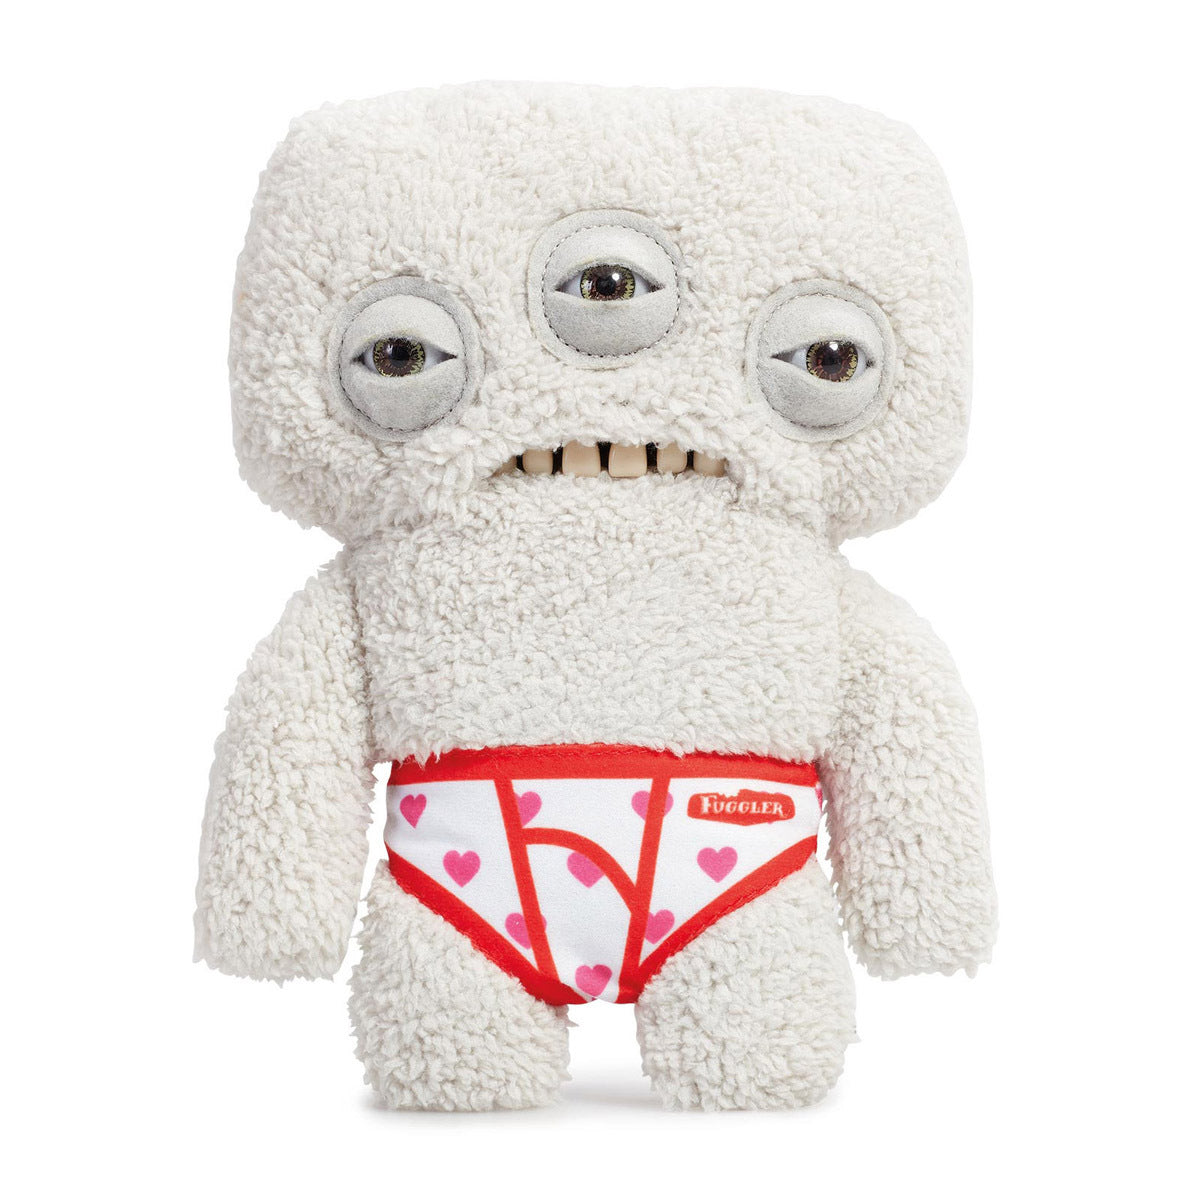 Fuggler 22cm Funny Ugly Monster - Budgie Fuggler Annoyed Alien (Grey) Soft Toy